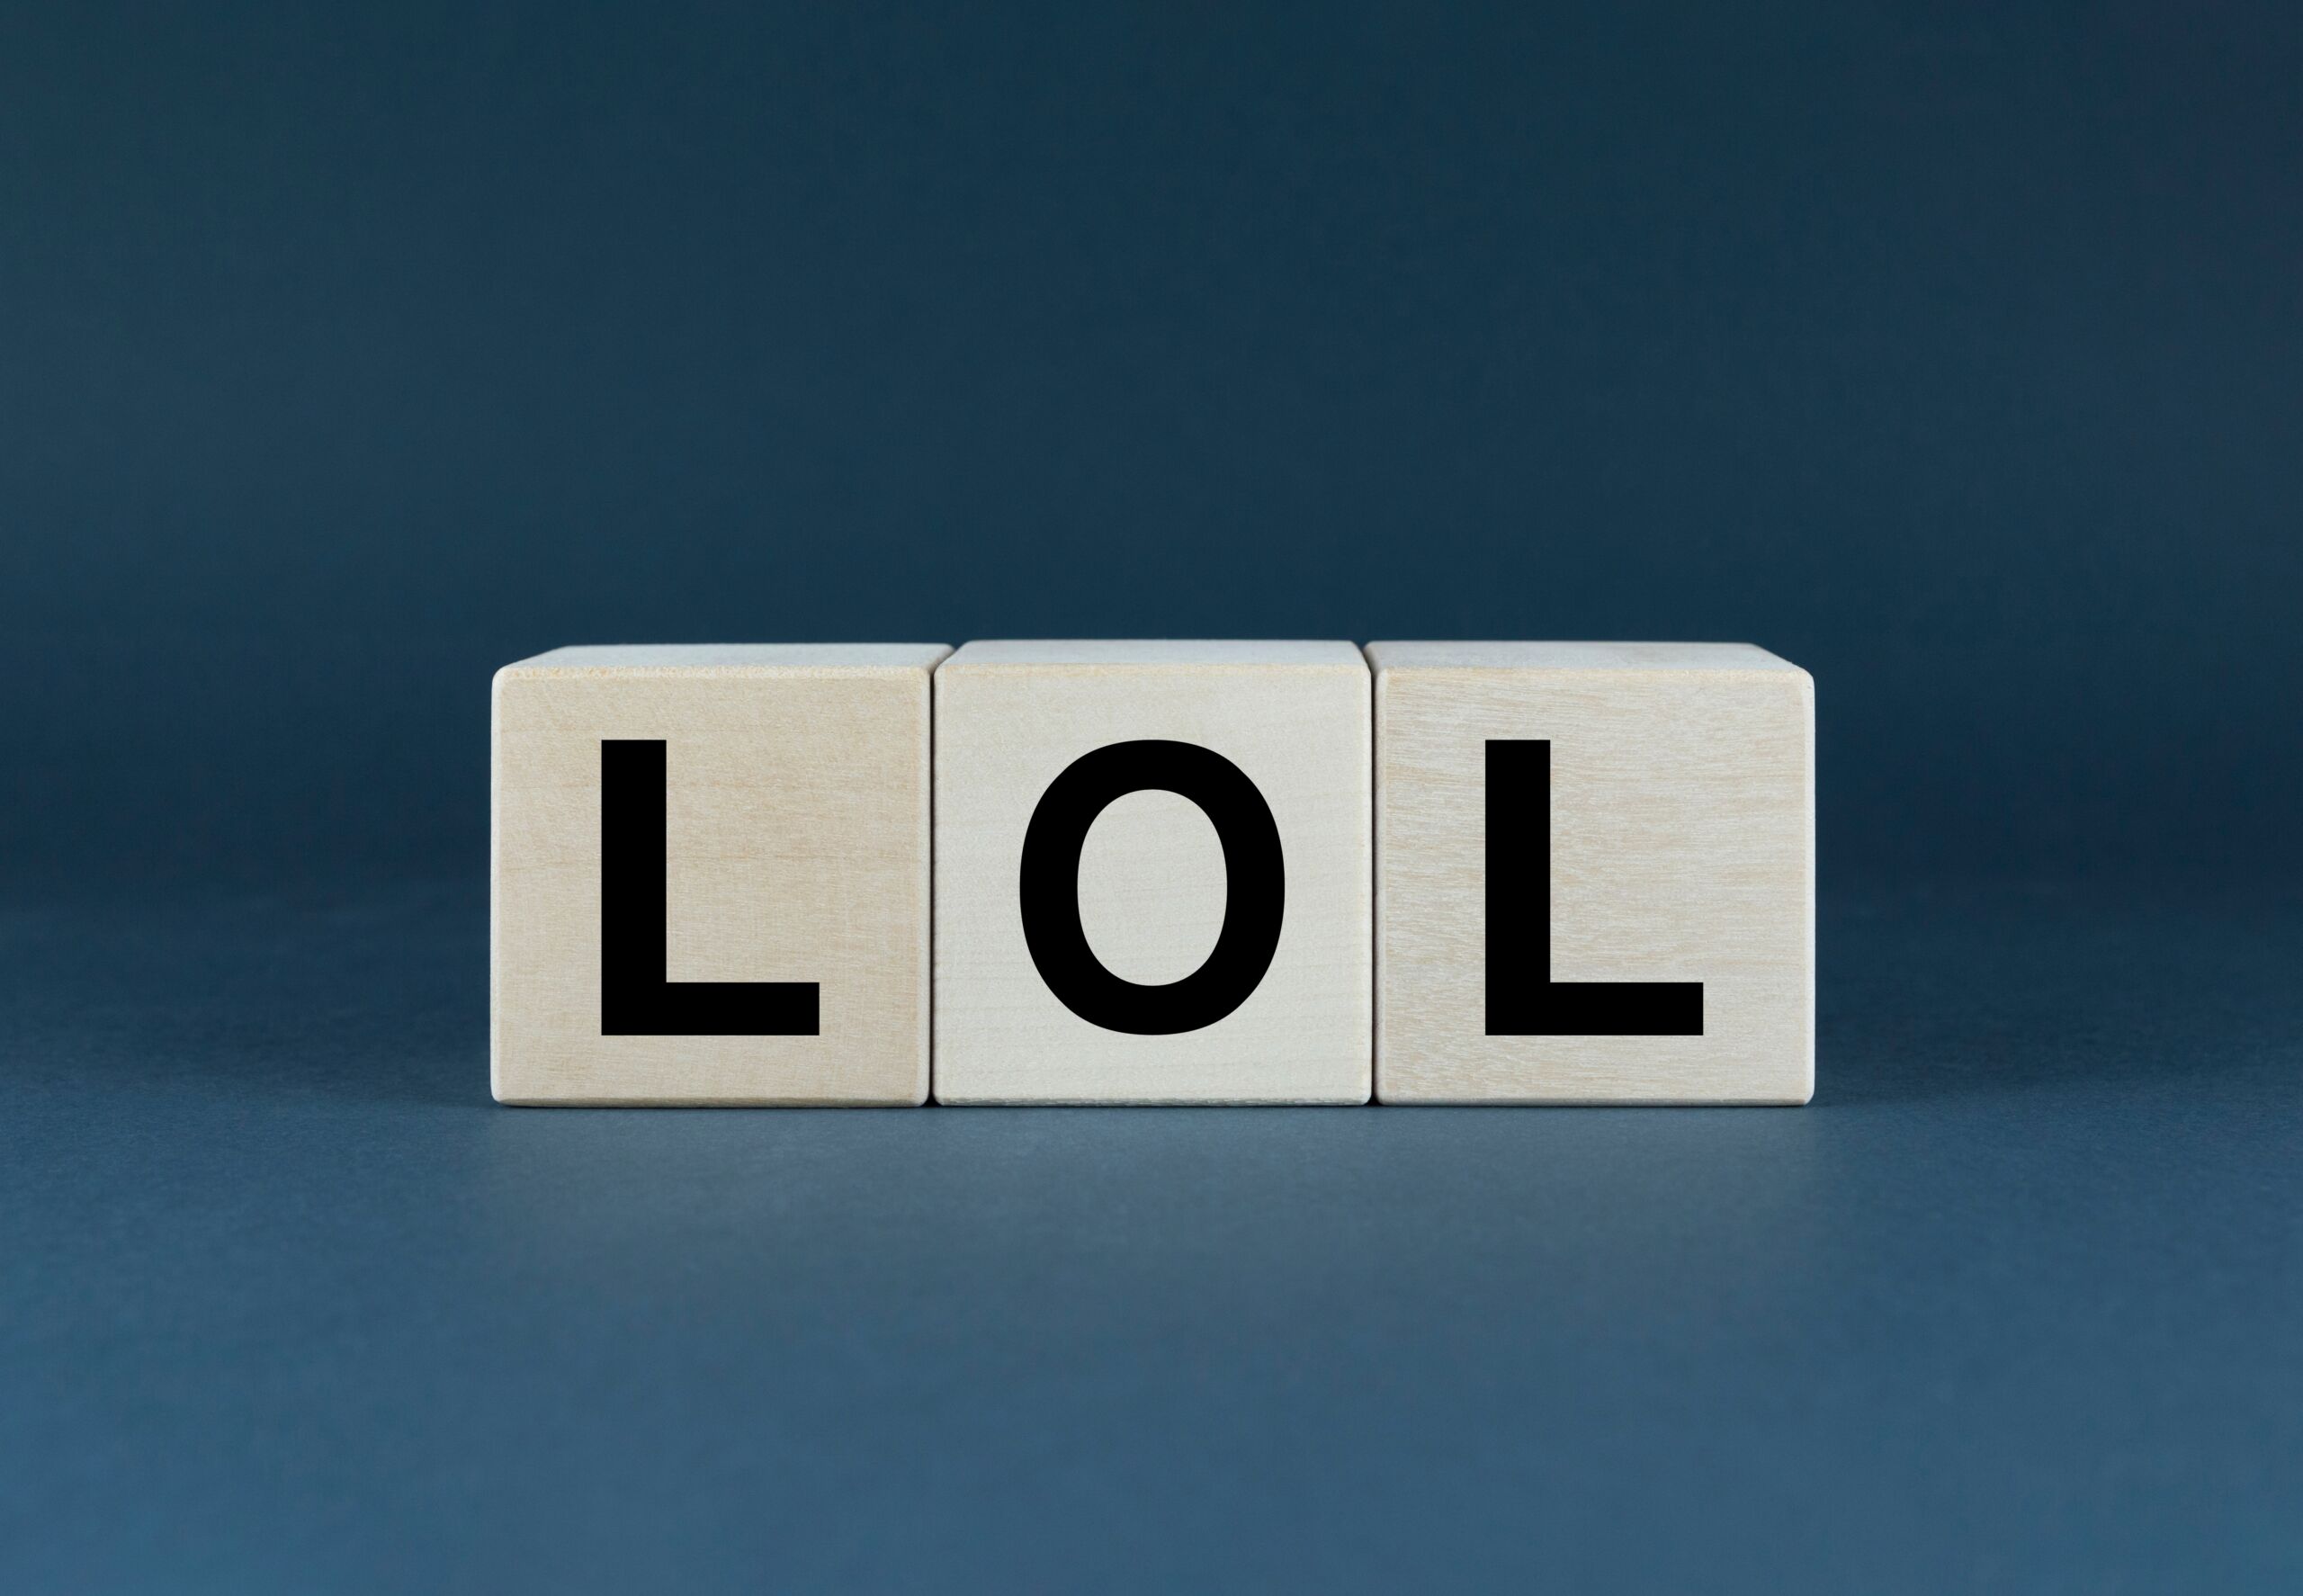 Co oznacza skrót "lol" i jak poprawnie go używać/ Fot. Prazis Images, shutterstock.com